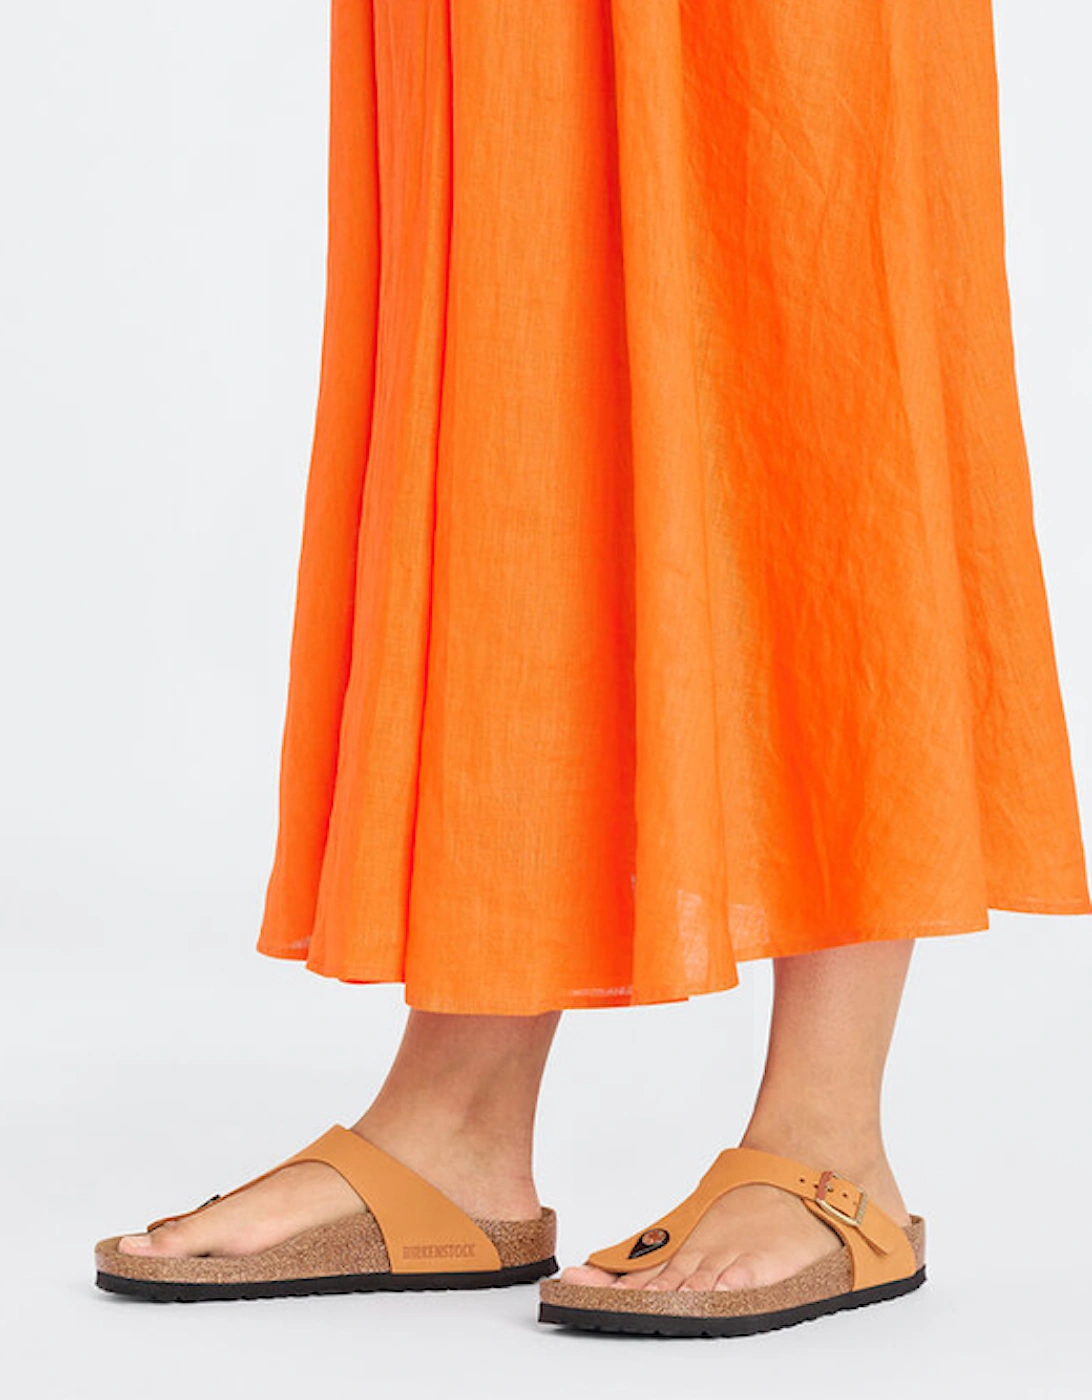 Birkenstock Women's Gizeh Nubuck Leather Sandal Burnt Orange